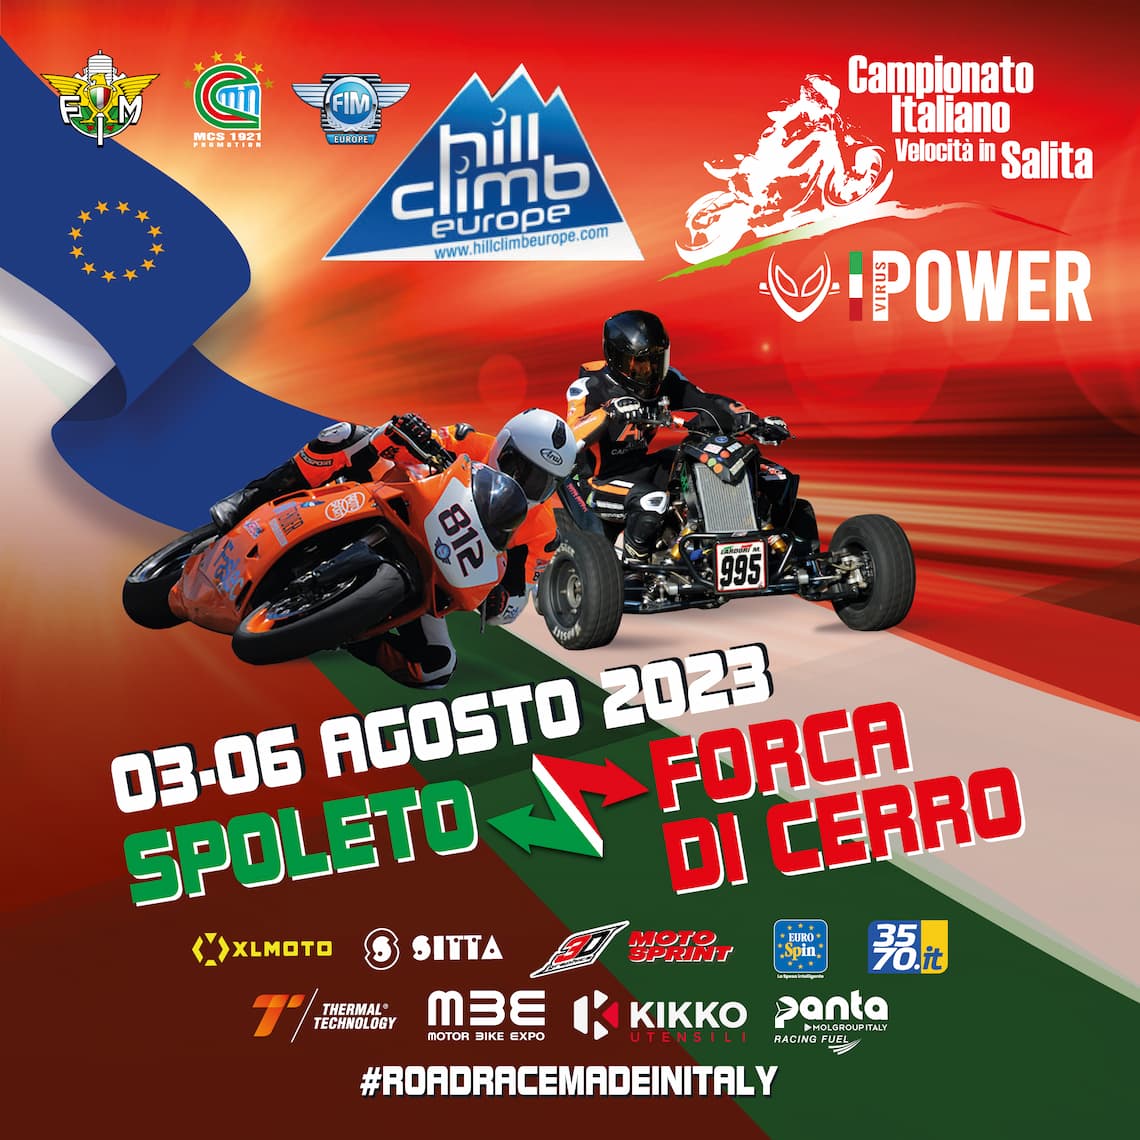 post quadrato Moto club spoleto Spoleto forca di cerro (1)